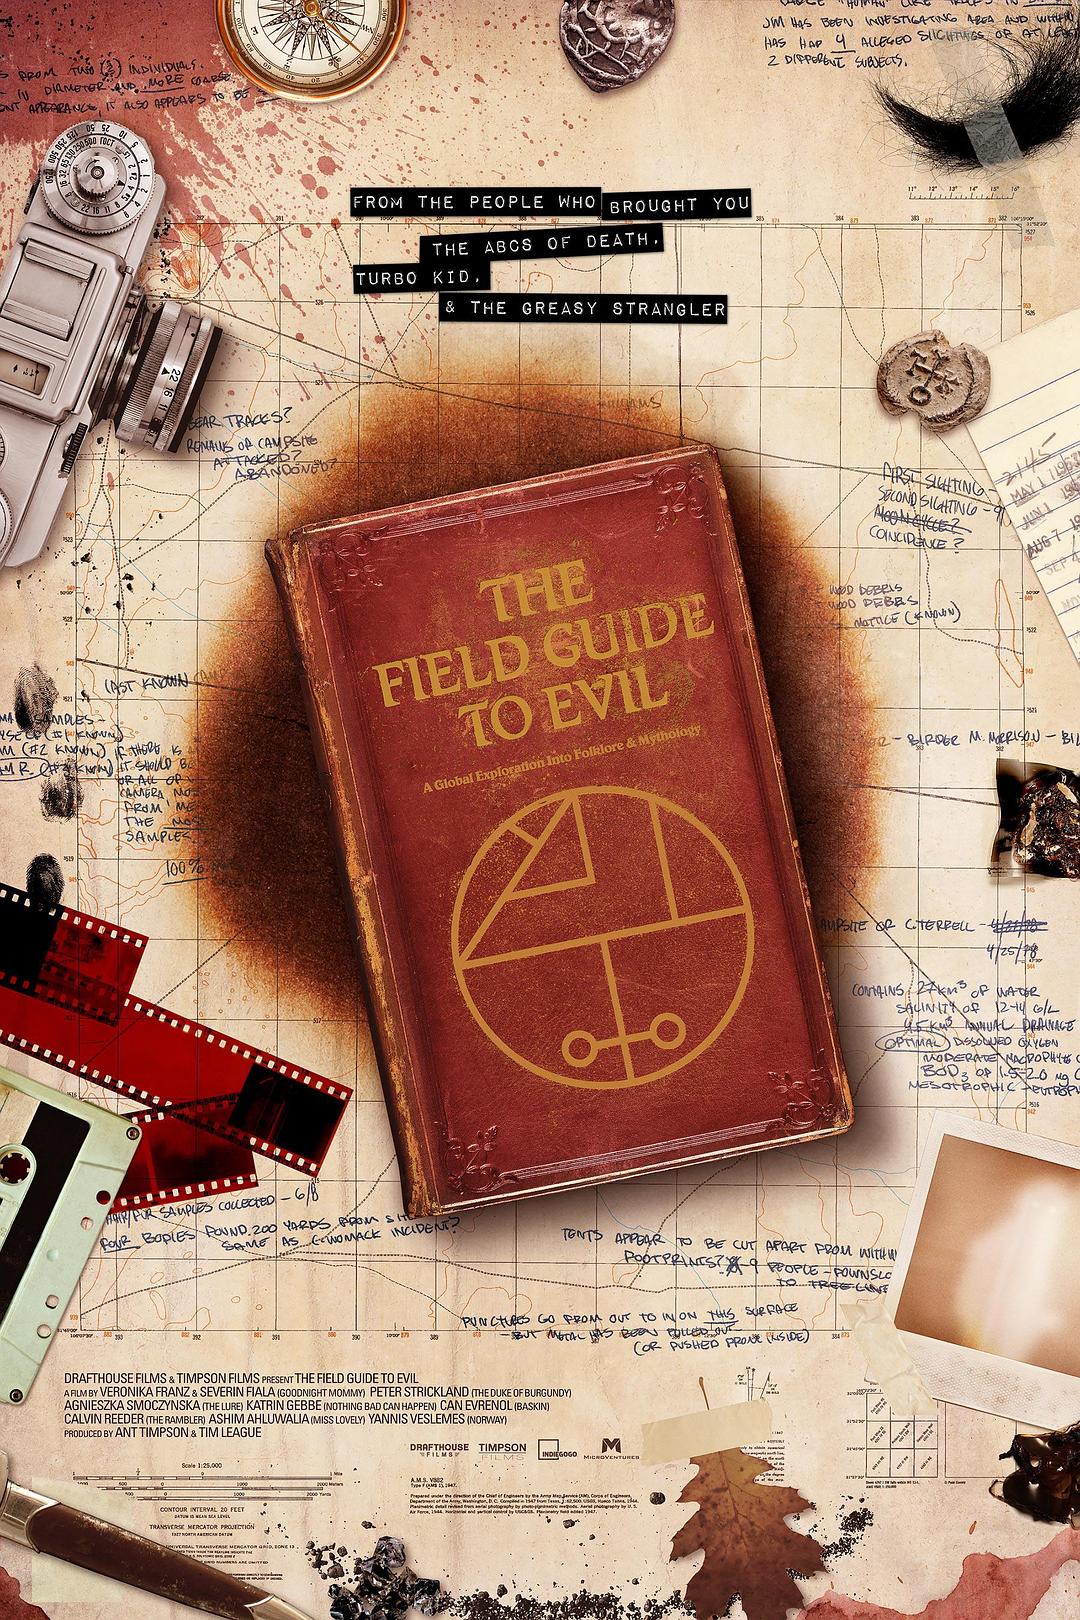 异端指南/完全邪恶指南 The.Field.Guide.To.Evil.2018.1080p.BluRay.x264.DTS-HD.MA.5.1-FGT 12.29GB-1.png